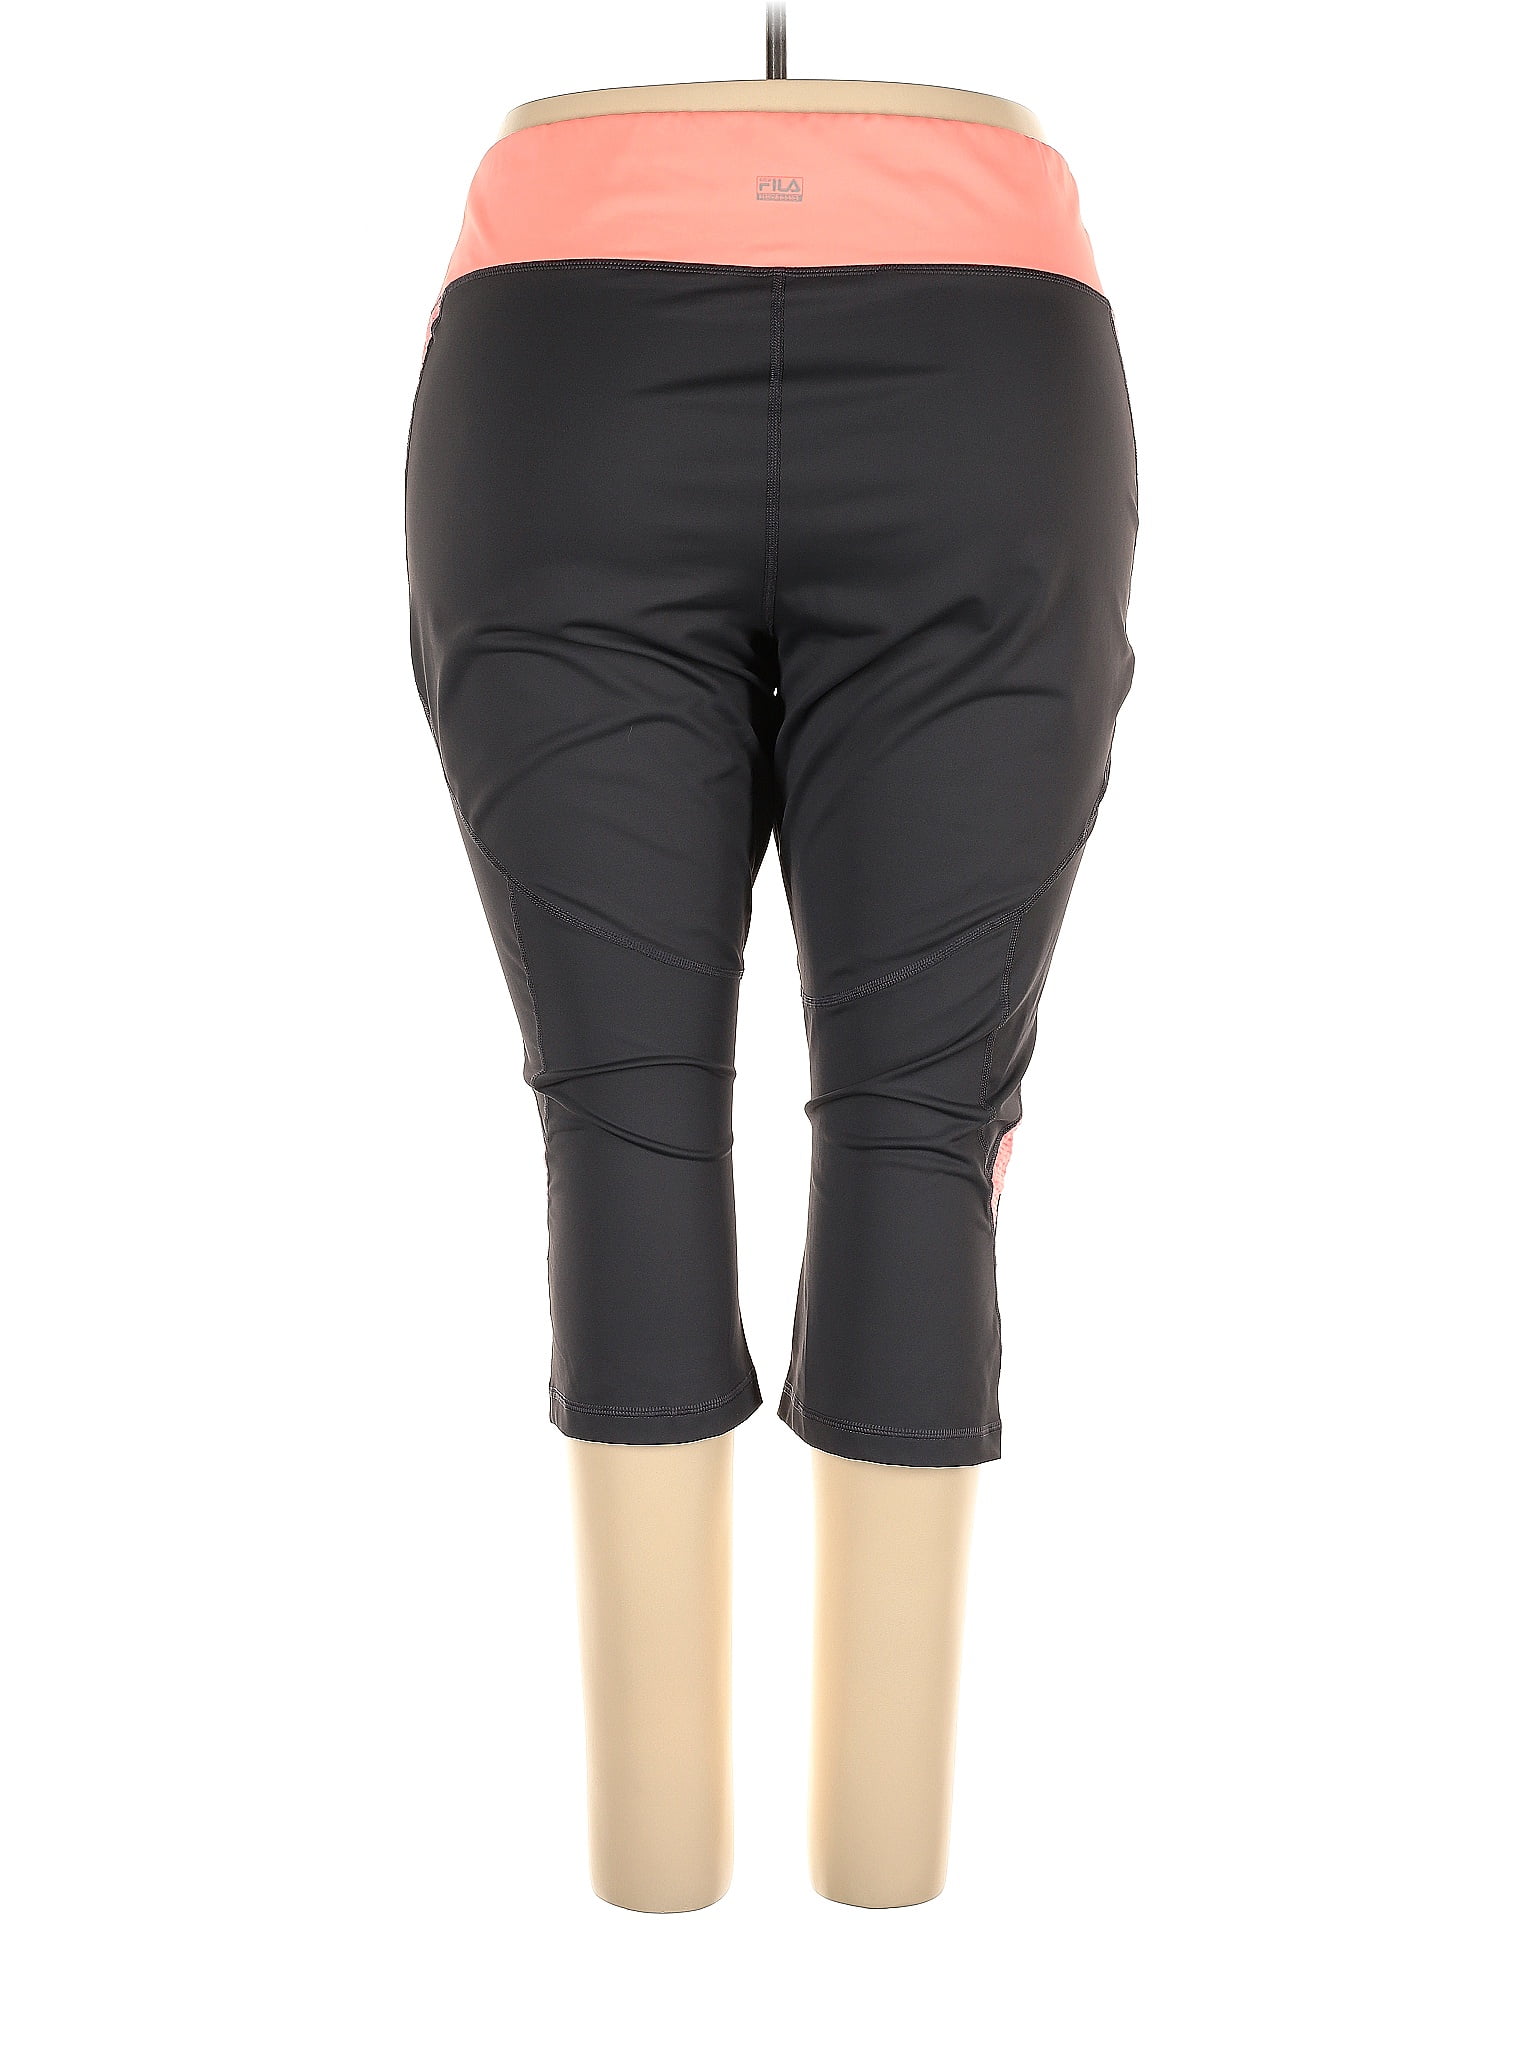 Fila Sport Solid Black Active Pants Size 3X (Plus) - 60% off